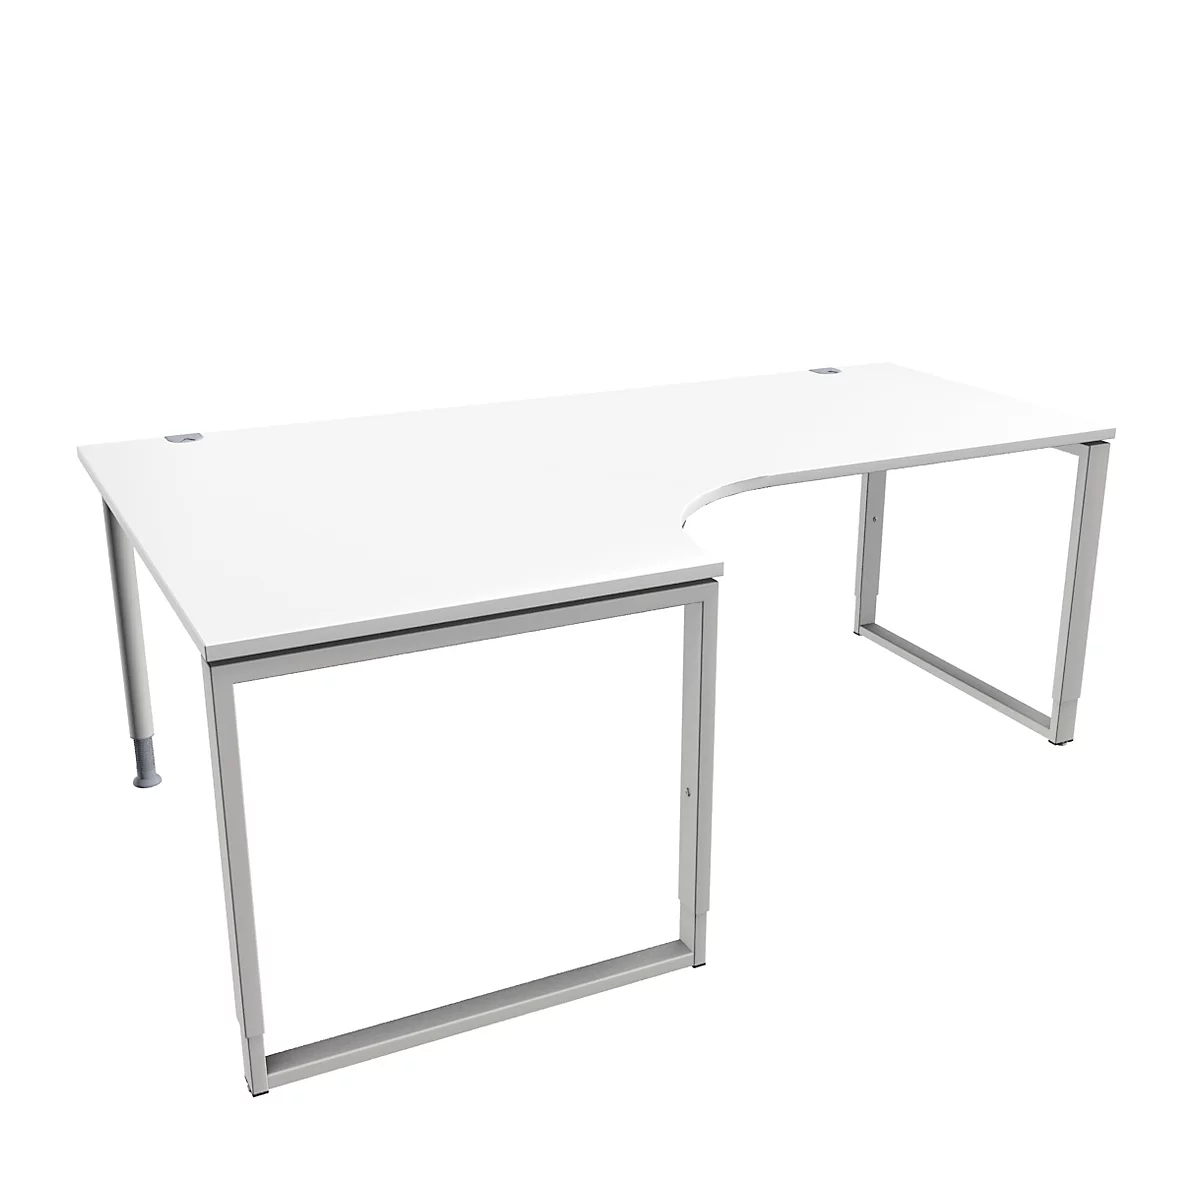 Schäfer Shop Genius MODENA FLEX escritorio angular, 90°, pata de soporte, fijación a la izquierda, An 2000 mm, blanco